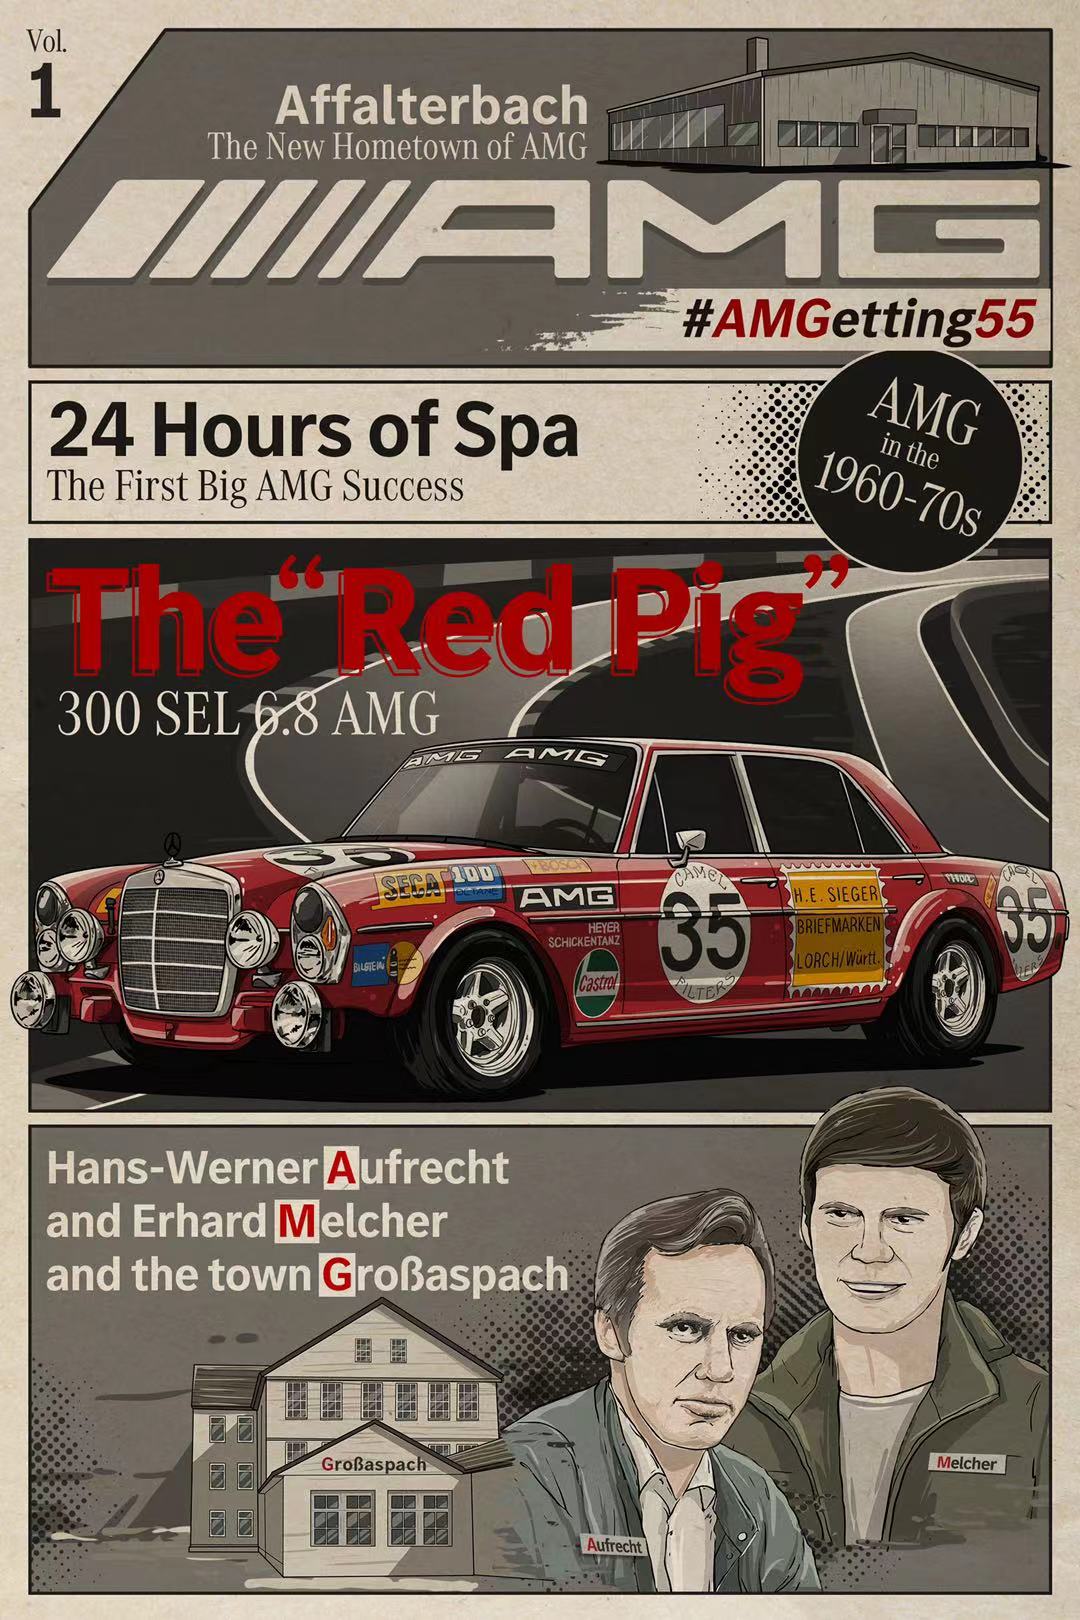 AMG发布55周年海报